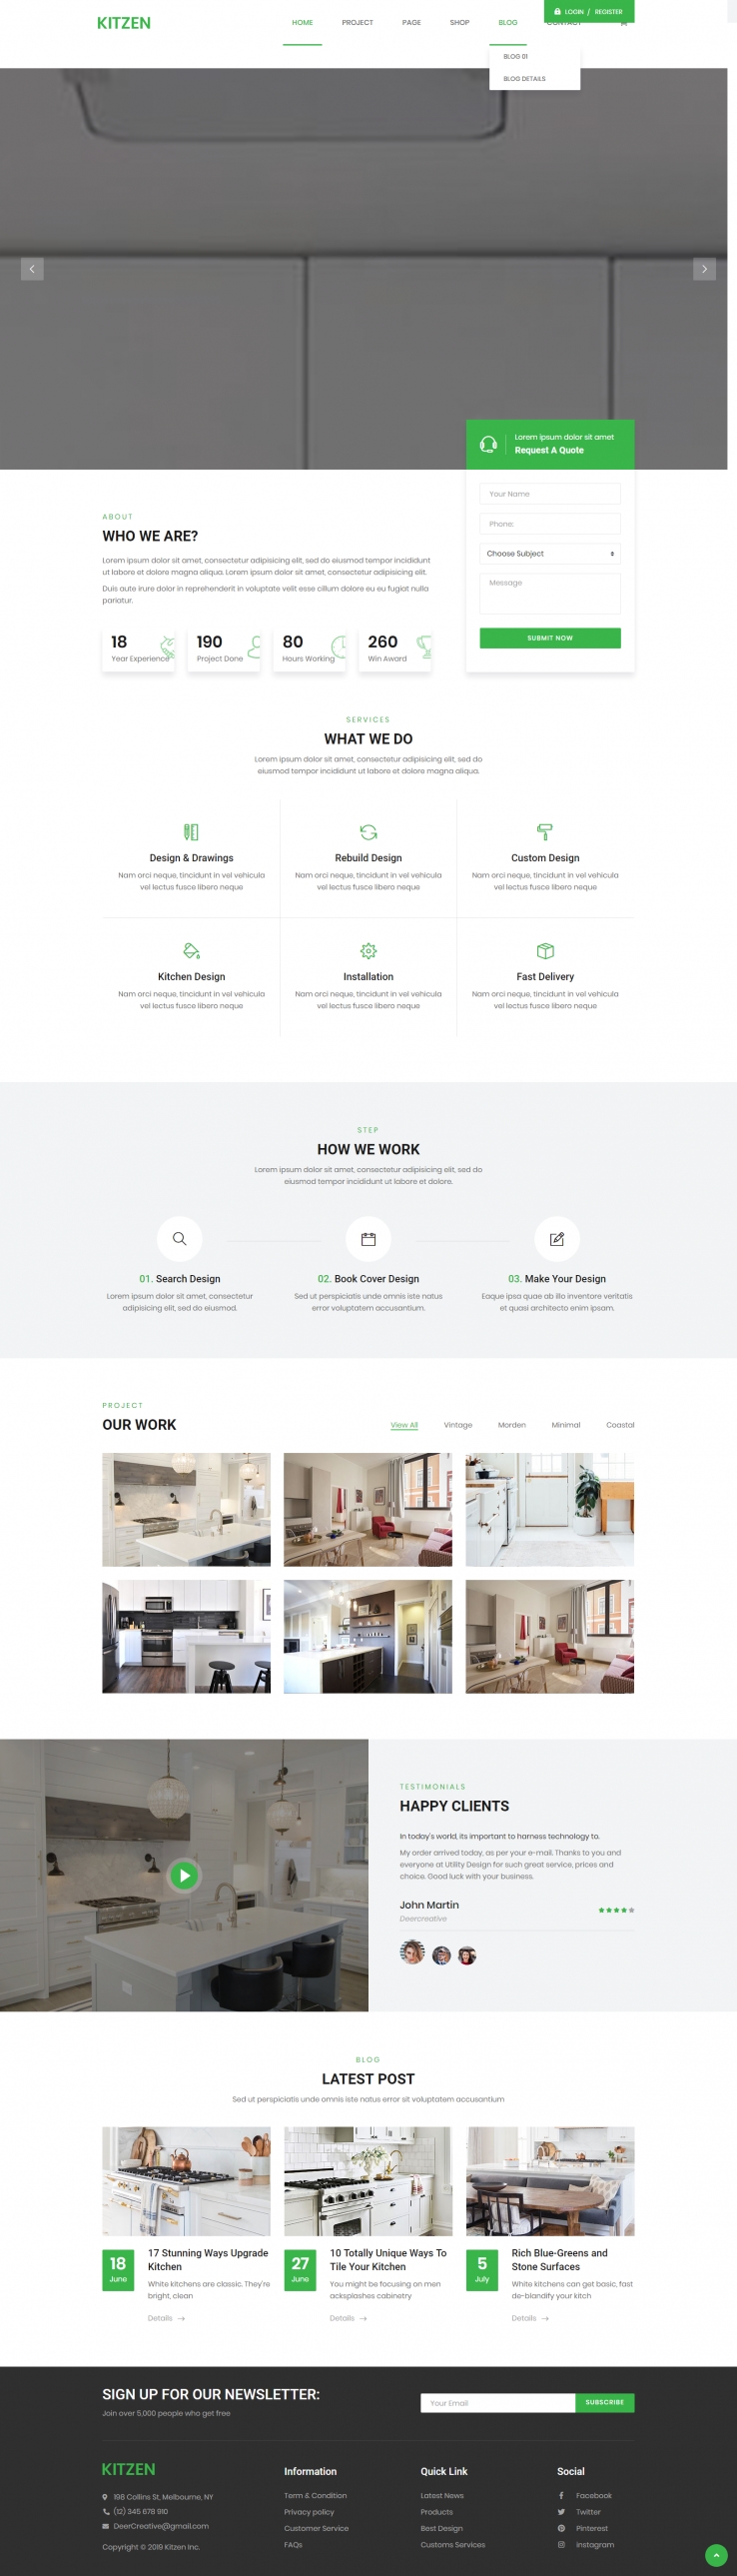 绿色简洁风格的厨房家具装修企业网站源码下载